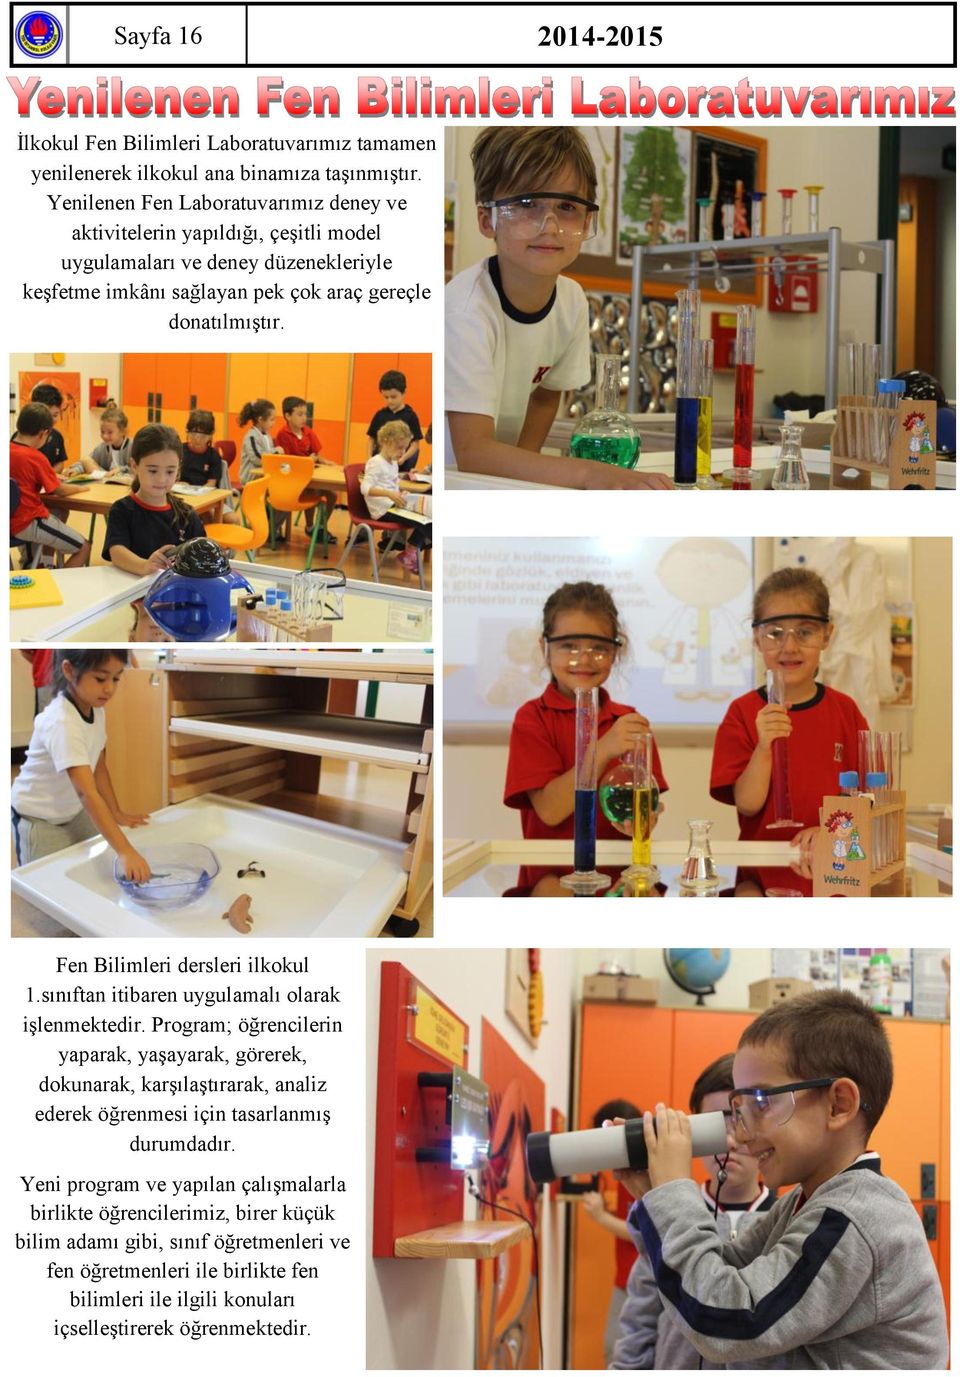 Fen Bilimleri dersleri ilkokul 1.sınıftan itibaren uygulamalı olarak işlenmektedir.